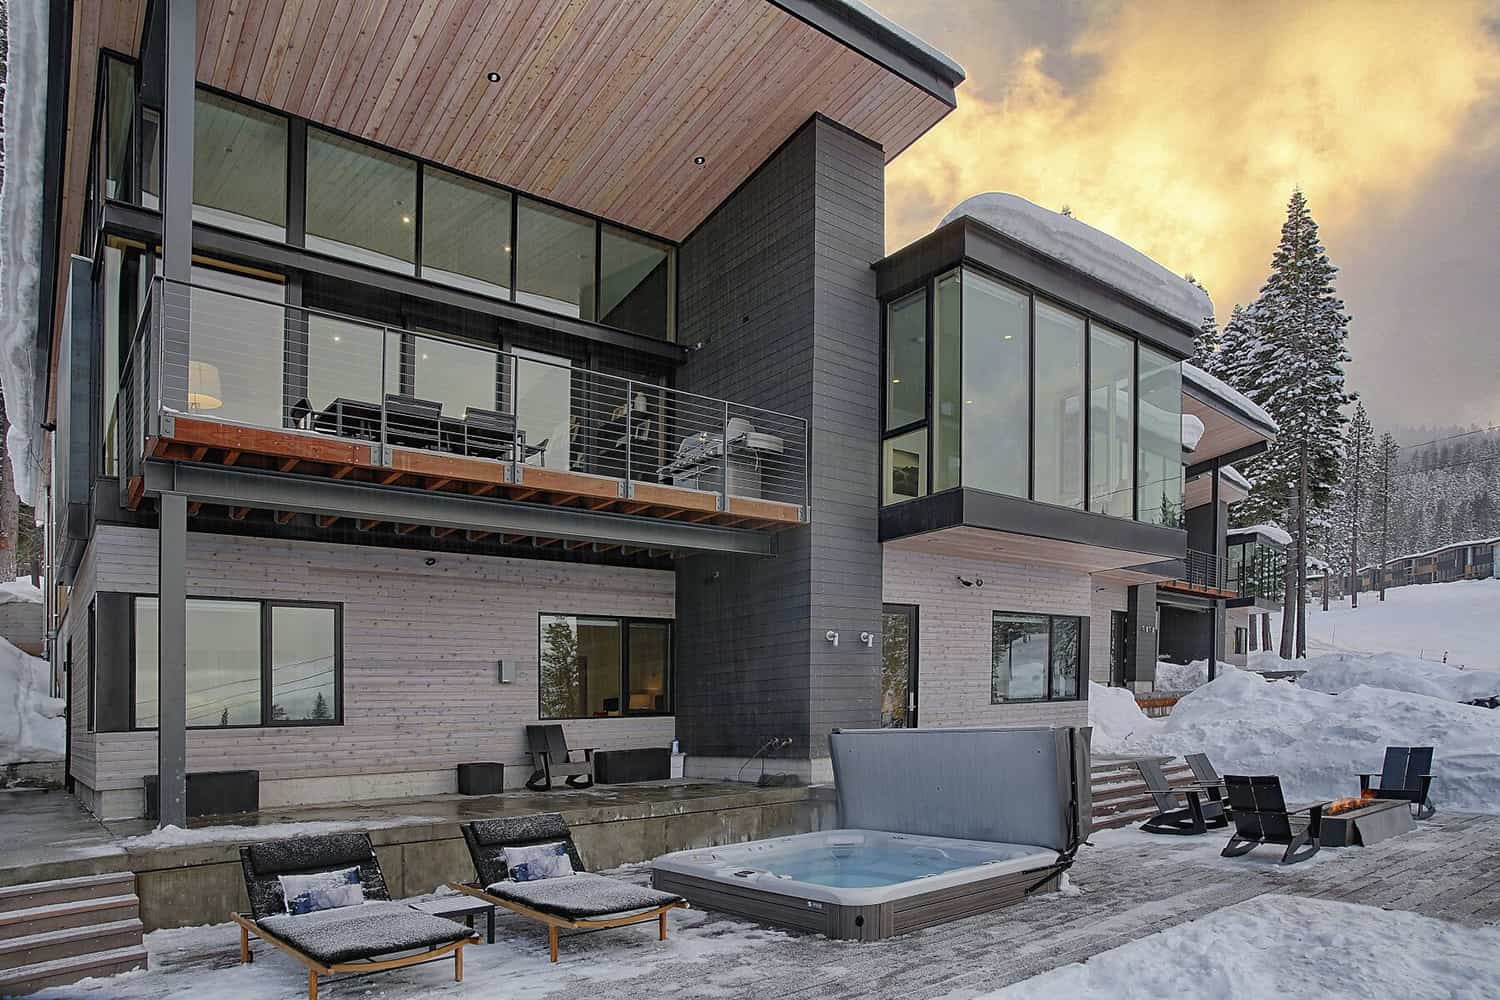 mountain-contemporary-home-exterior-with-snow